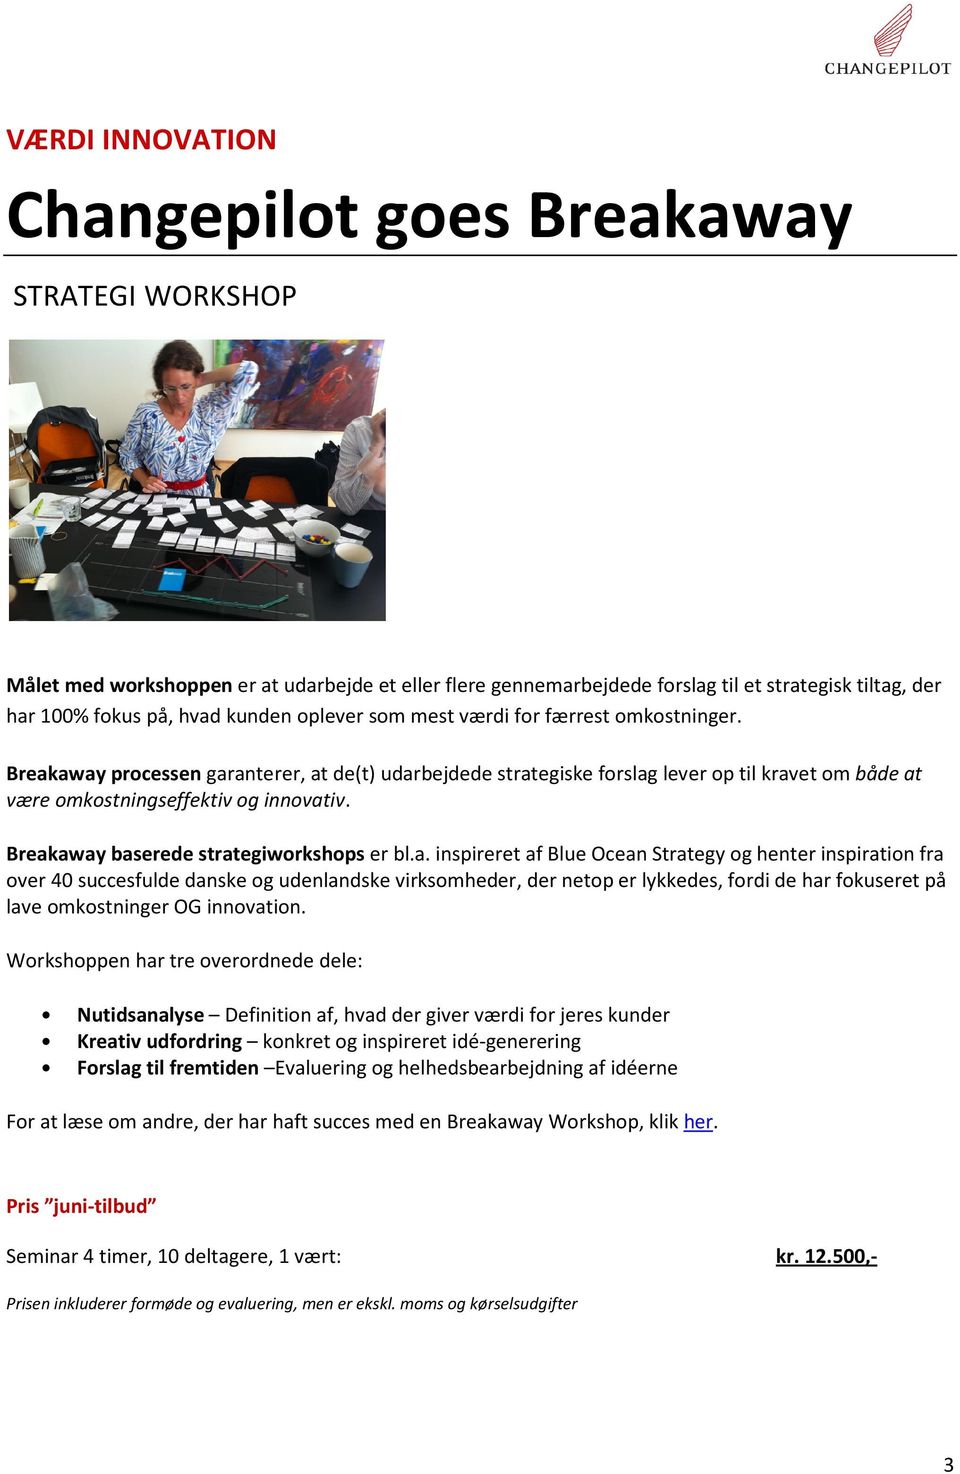 Breakaway baserede strategiworkshops er bl.a. inspireret af Blue Ocean Strategy og henter inspiration fra over 40 succesfulde danske og udenlandske virksomheder, der netop er lykkedes, fordi de har